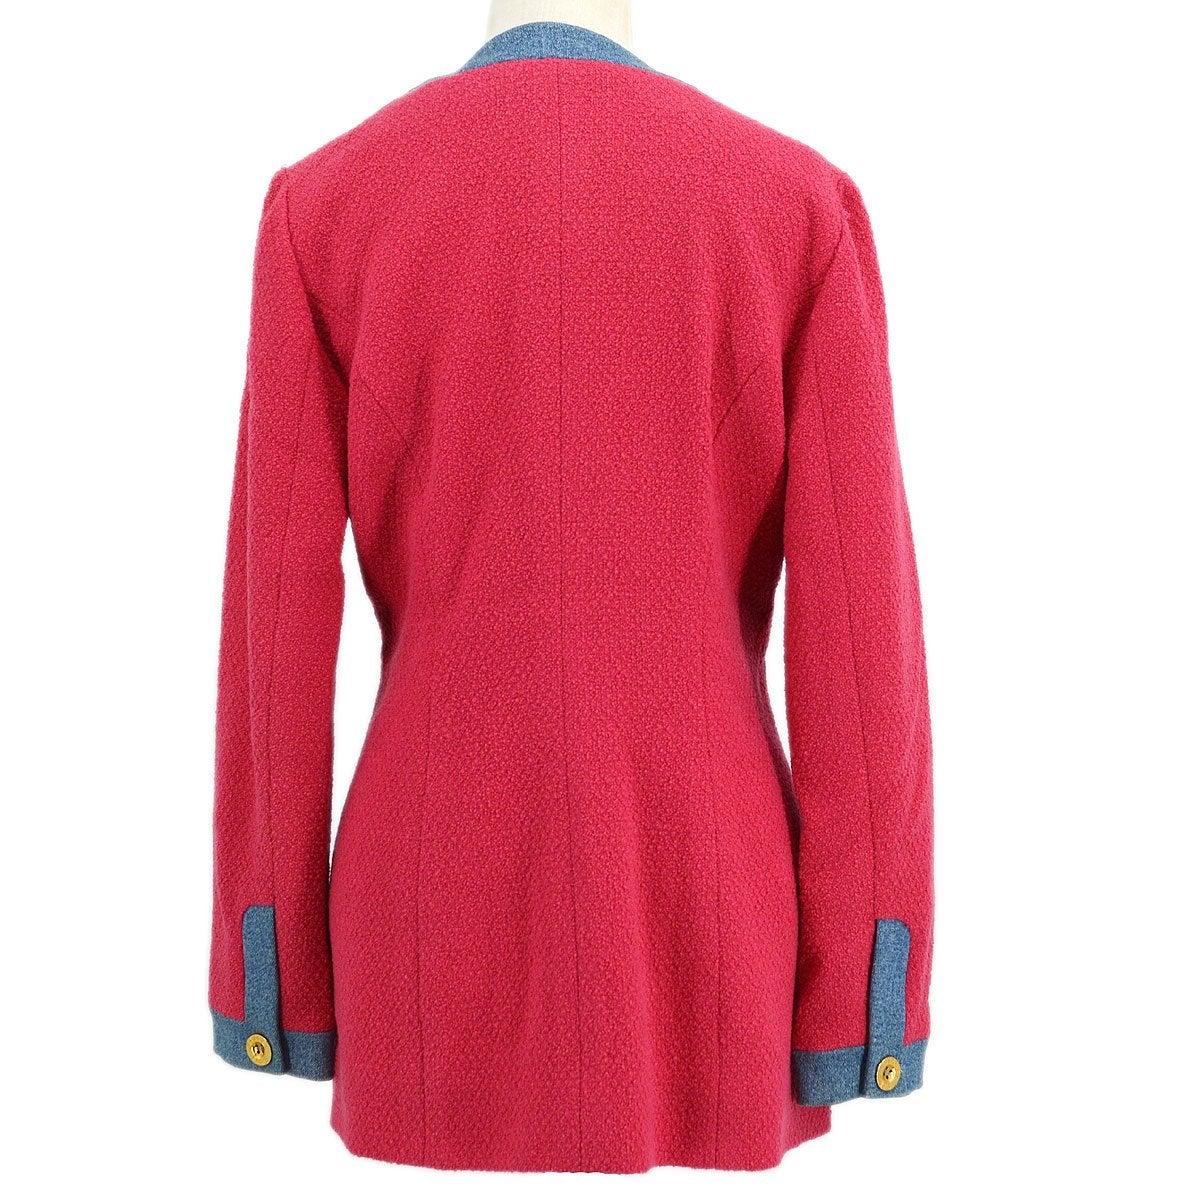 CHANEL Rosa Blau Denim Gold Wolle Tweed Strickjacke mit Knopfleiste - Größe FR 40 (Rot)